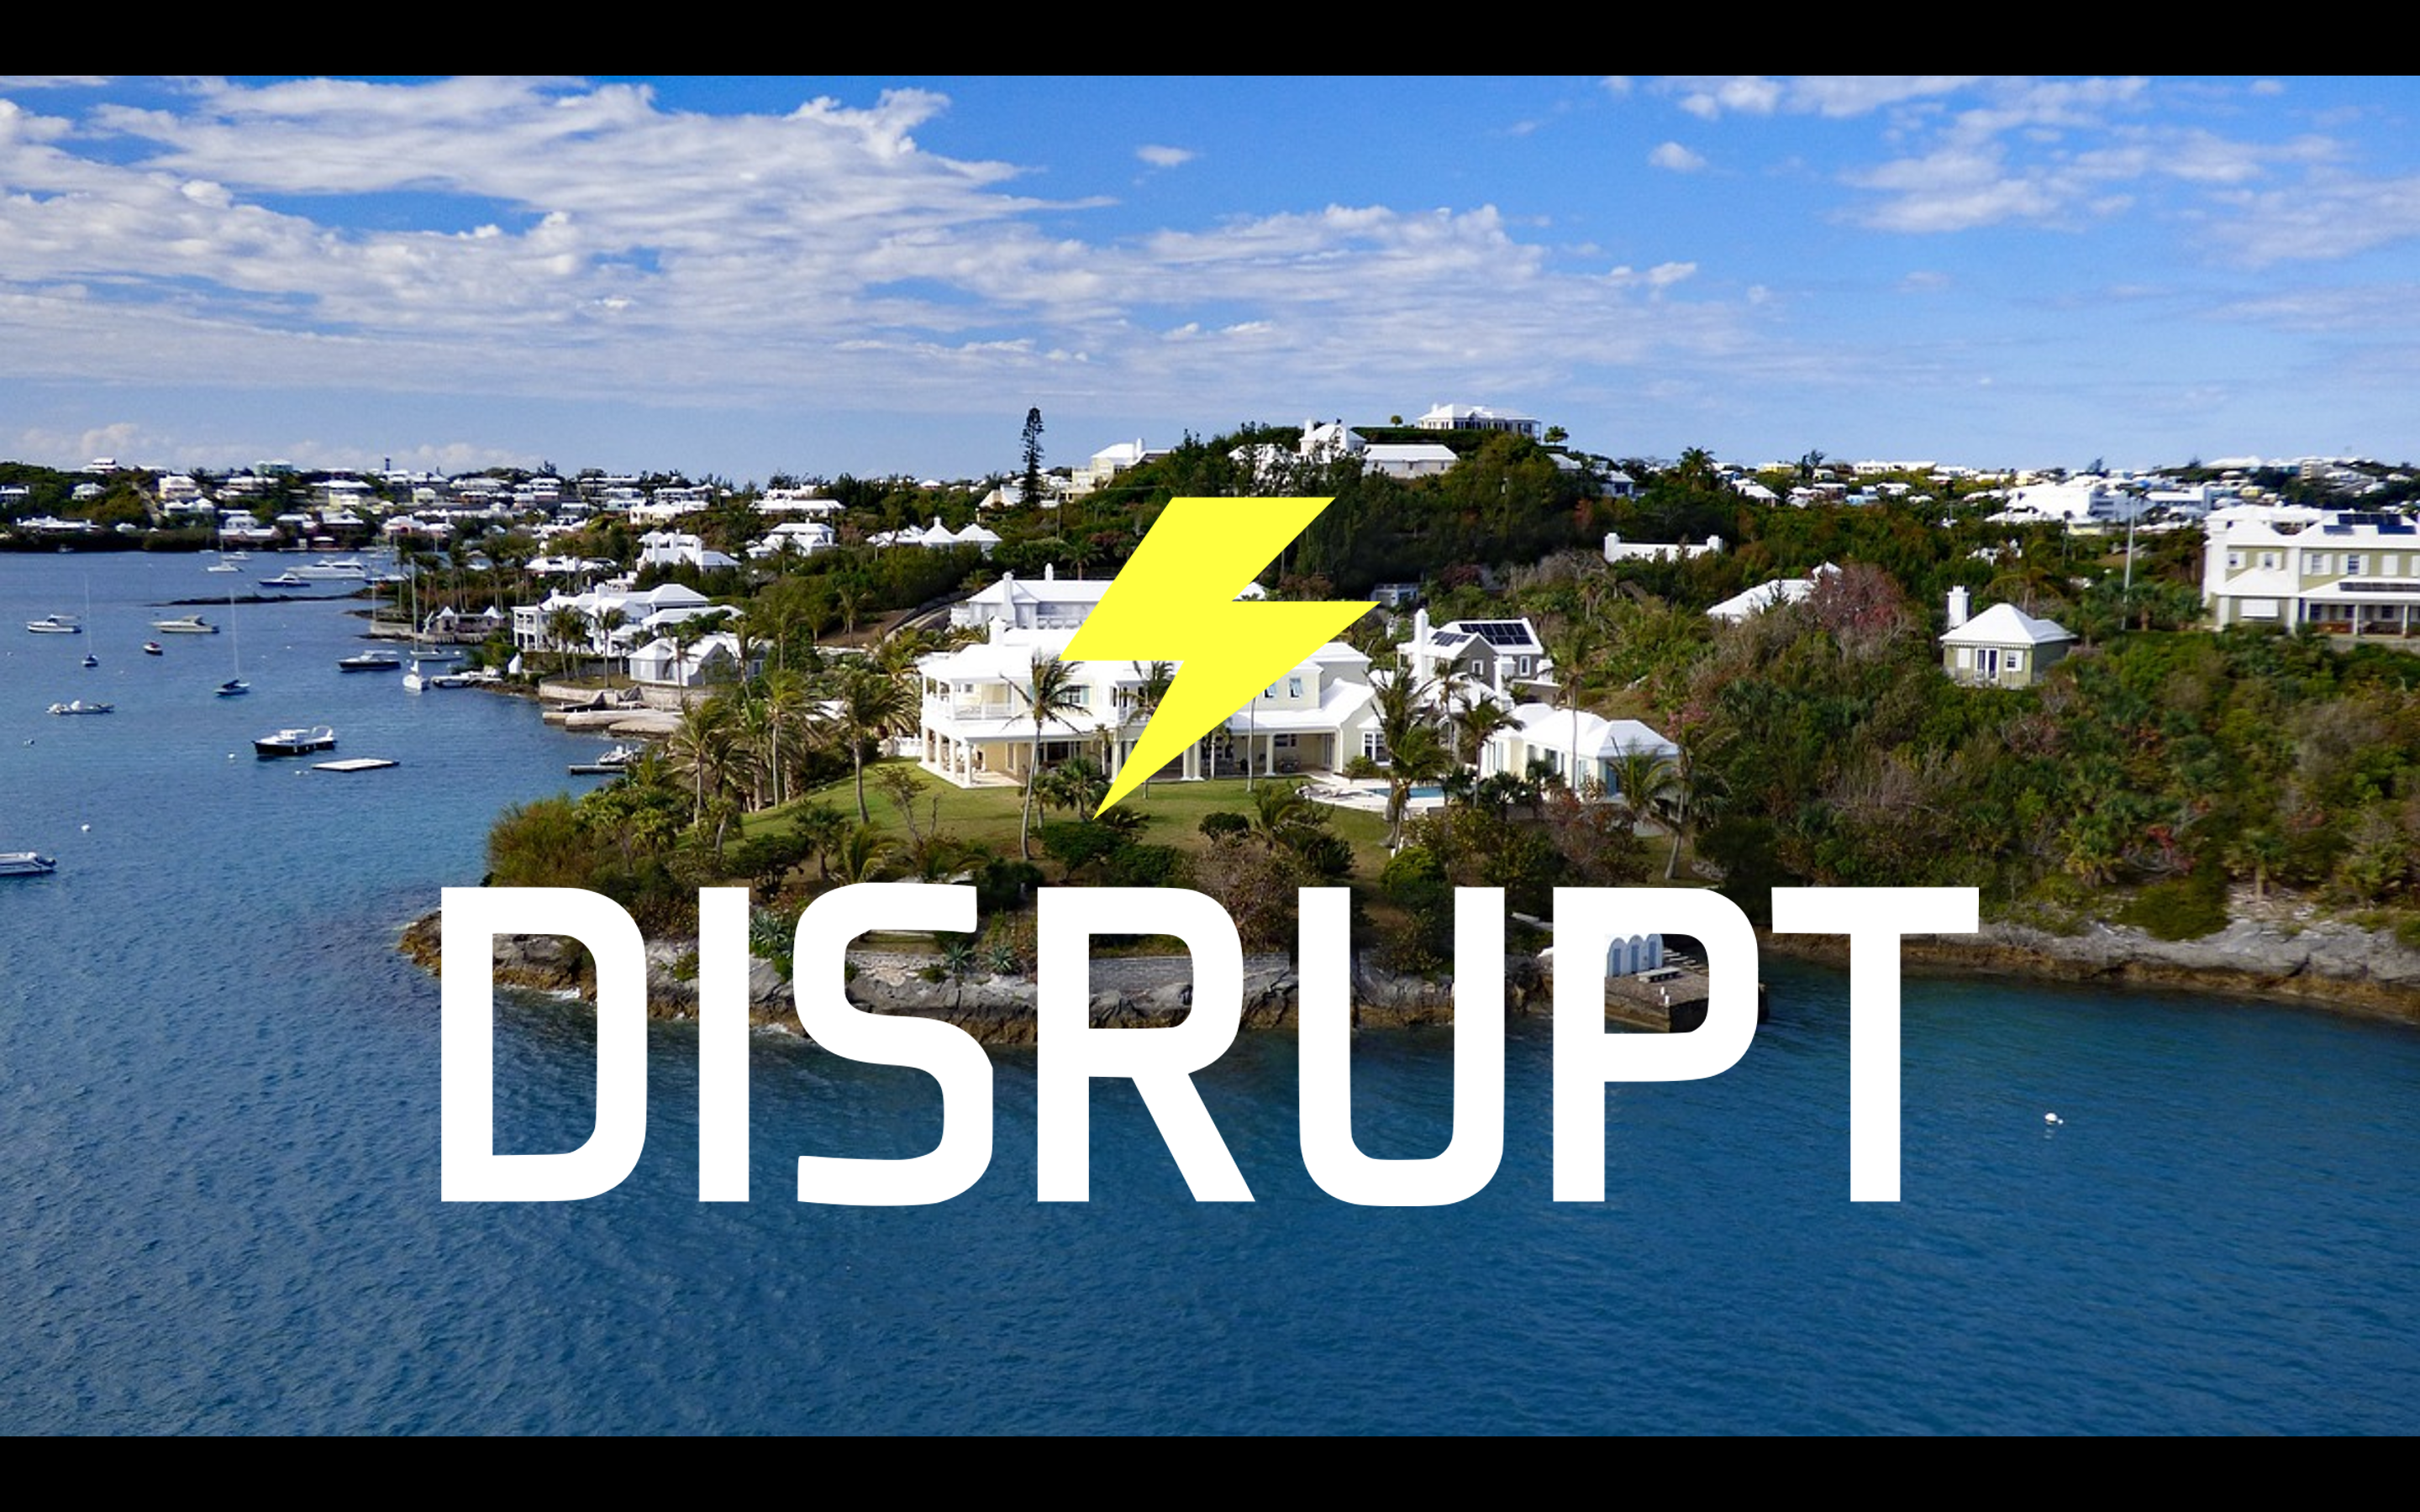 DisruptHR Bermuda Preview with Felicia Rickards